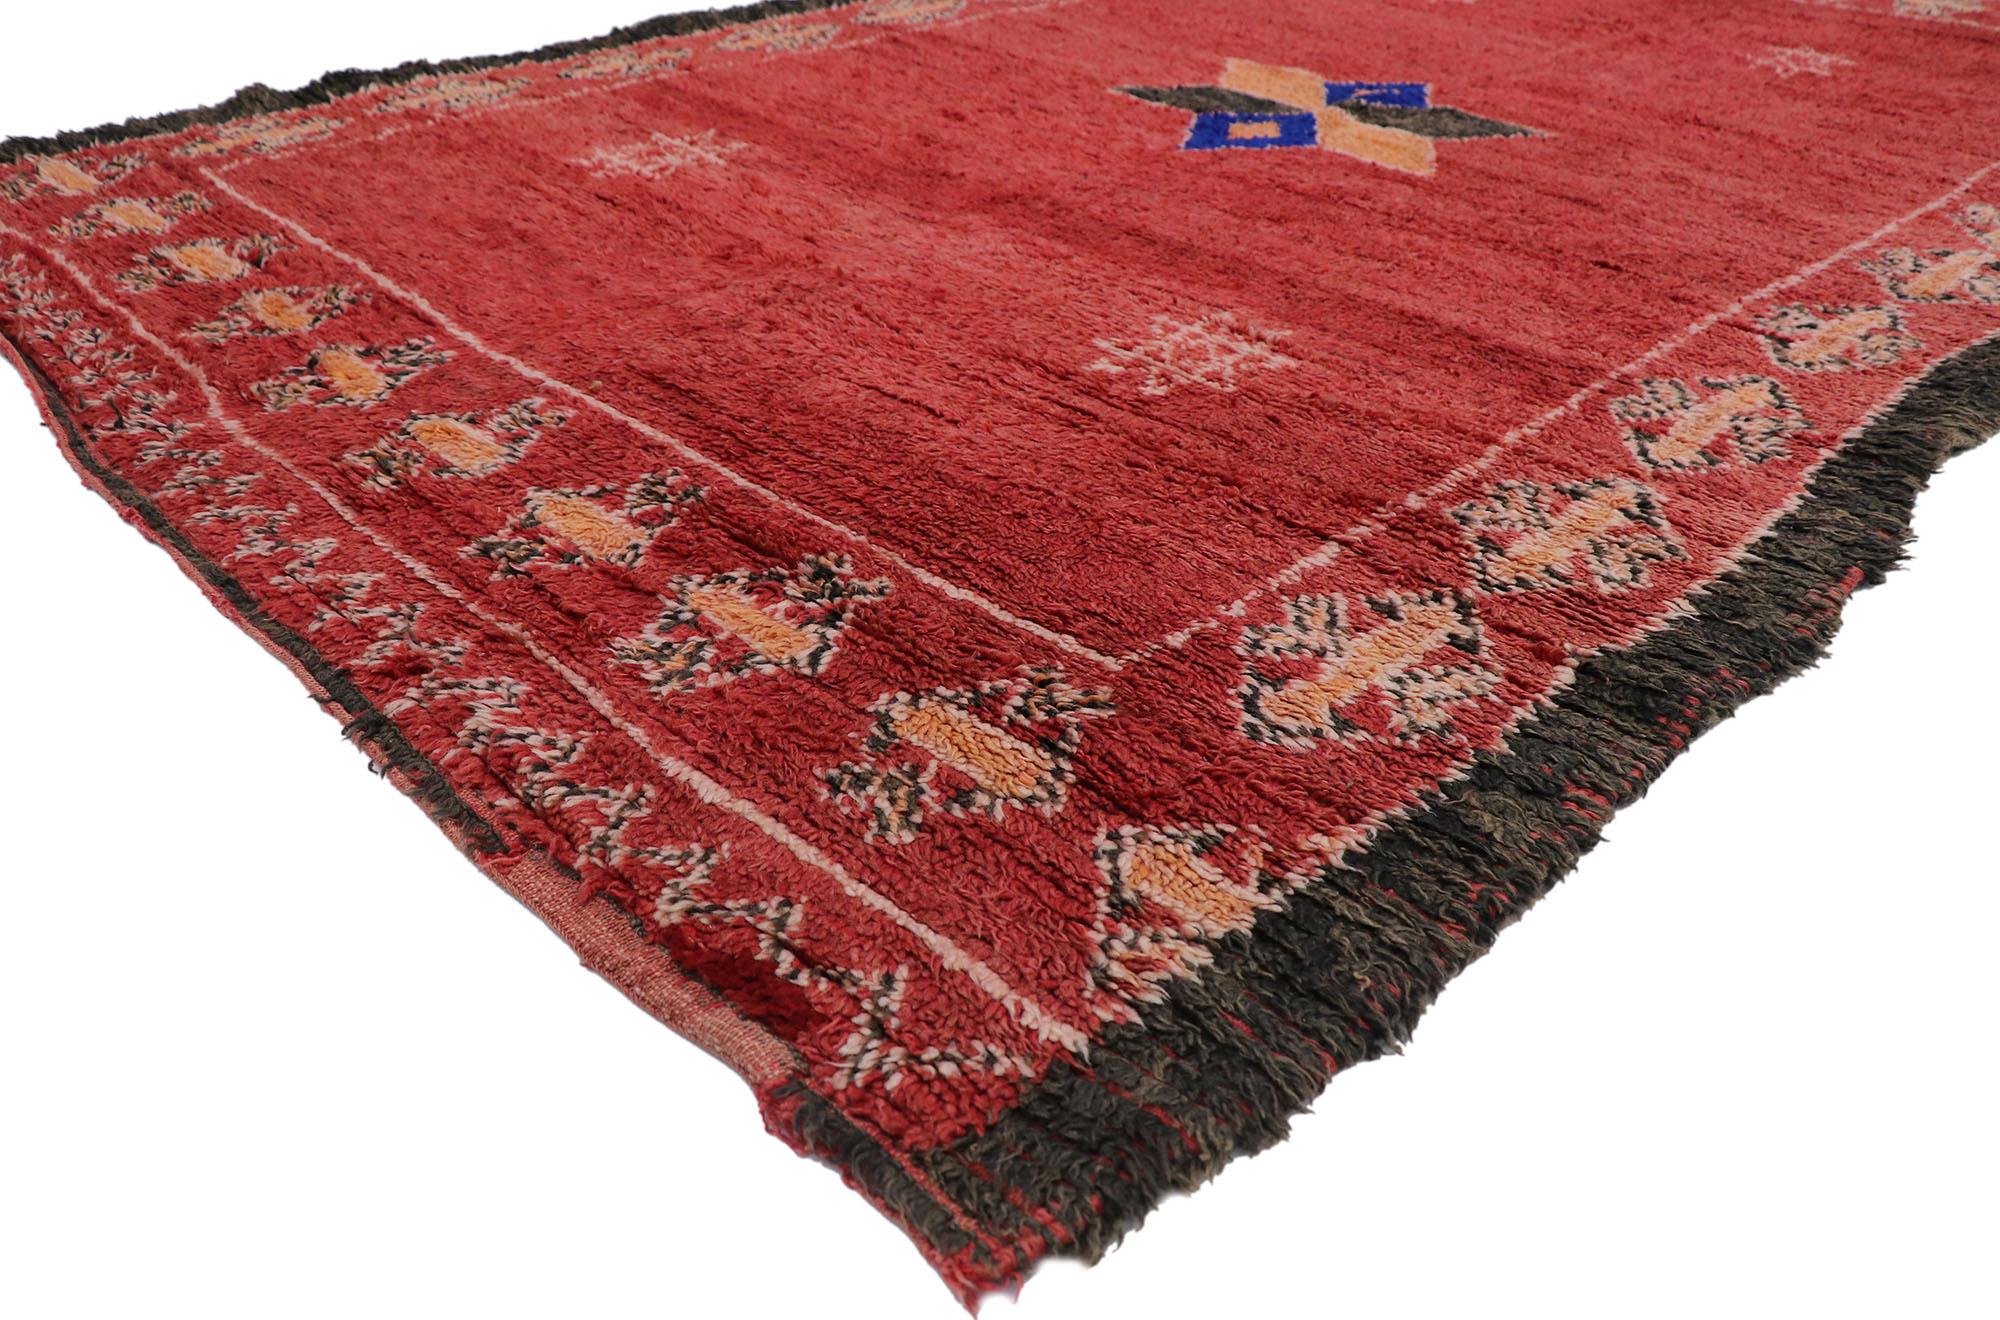 21272 Tapis marocain Vintage Red Taznakht, 06'06 x 10'05. Les tapis marocains Taznakht sont des textiles tissés à la main dans la région de Taznakht, dans le Haut Atlas marocain. Ils sont fabriqués par des femmes berbères selon des techniques